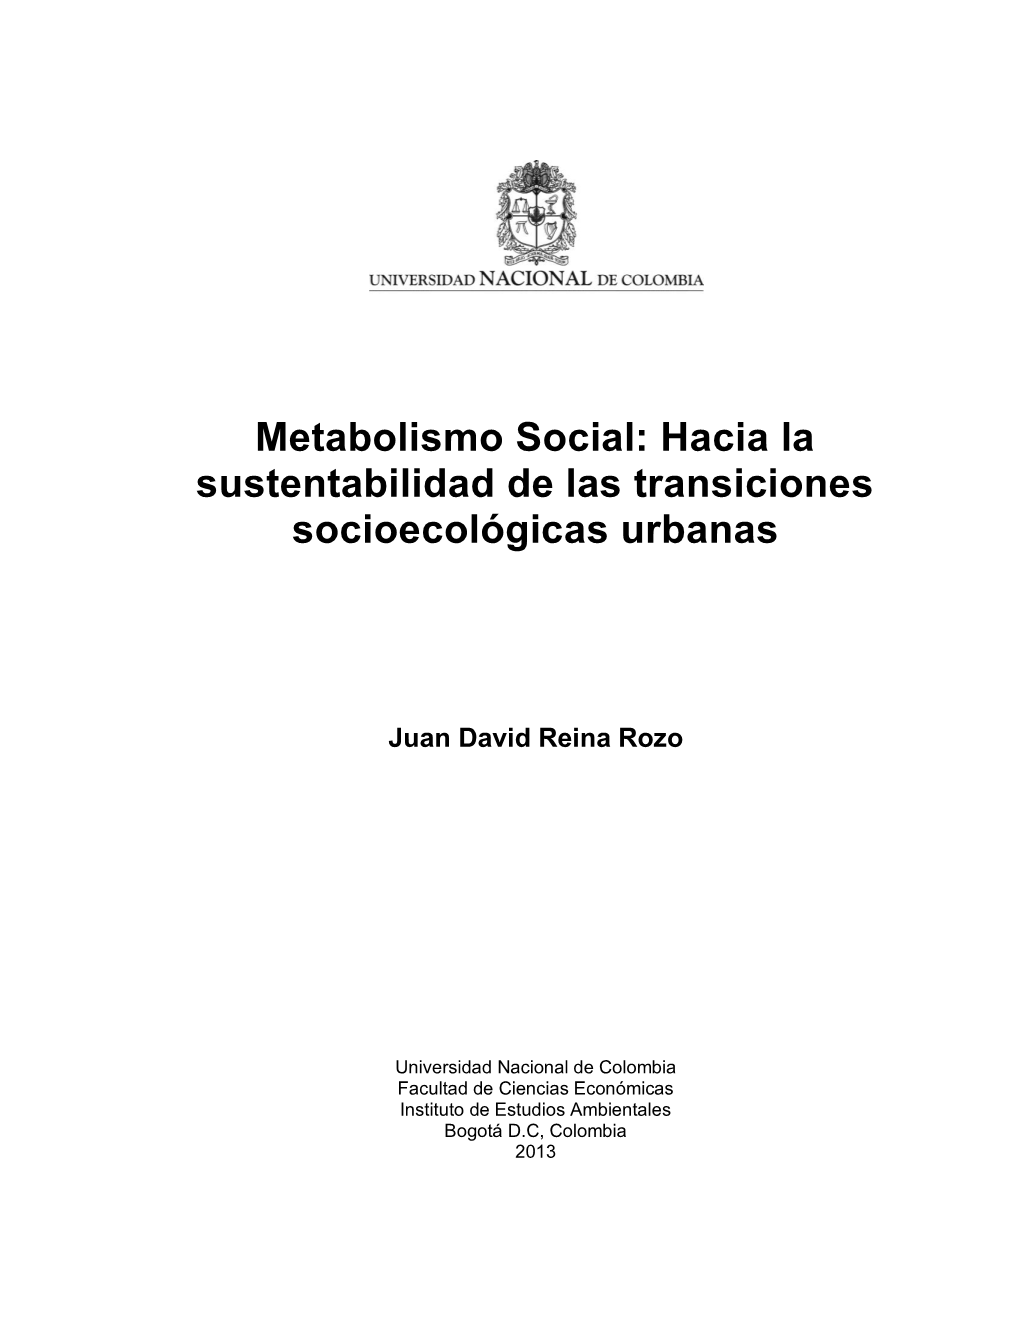 Metabolismo Social: Hacia La Sustentabilidad De Las Transiciones Socioecológicas Urbanas